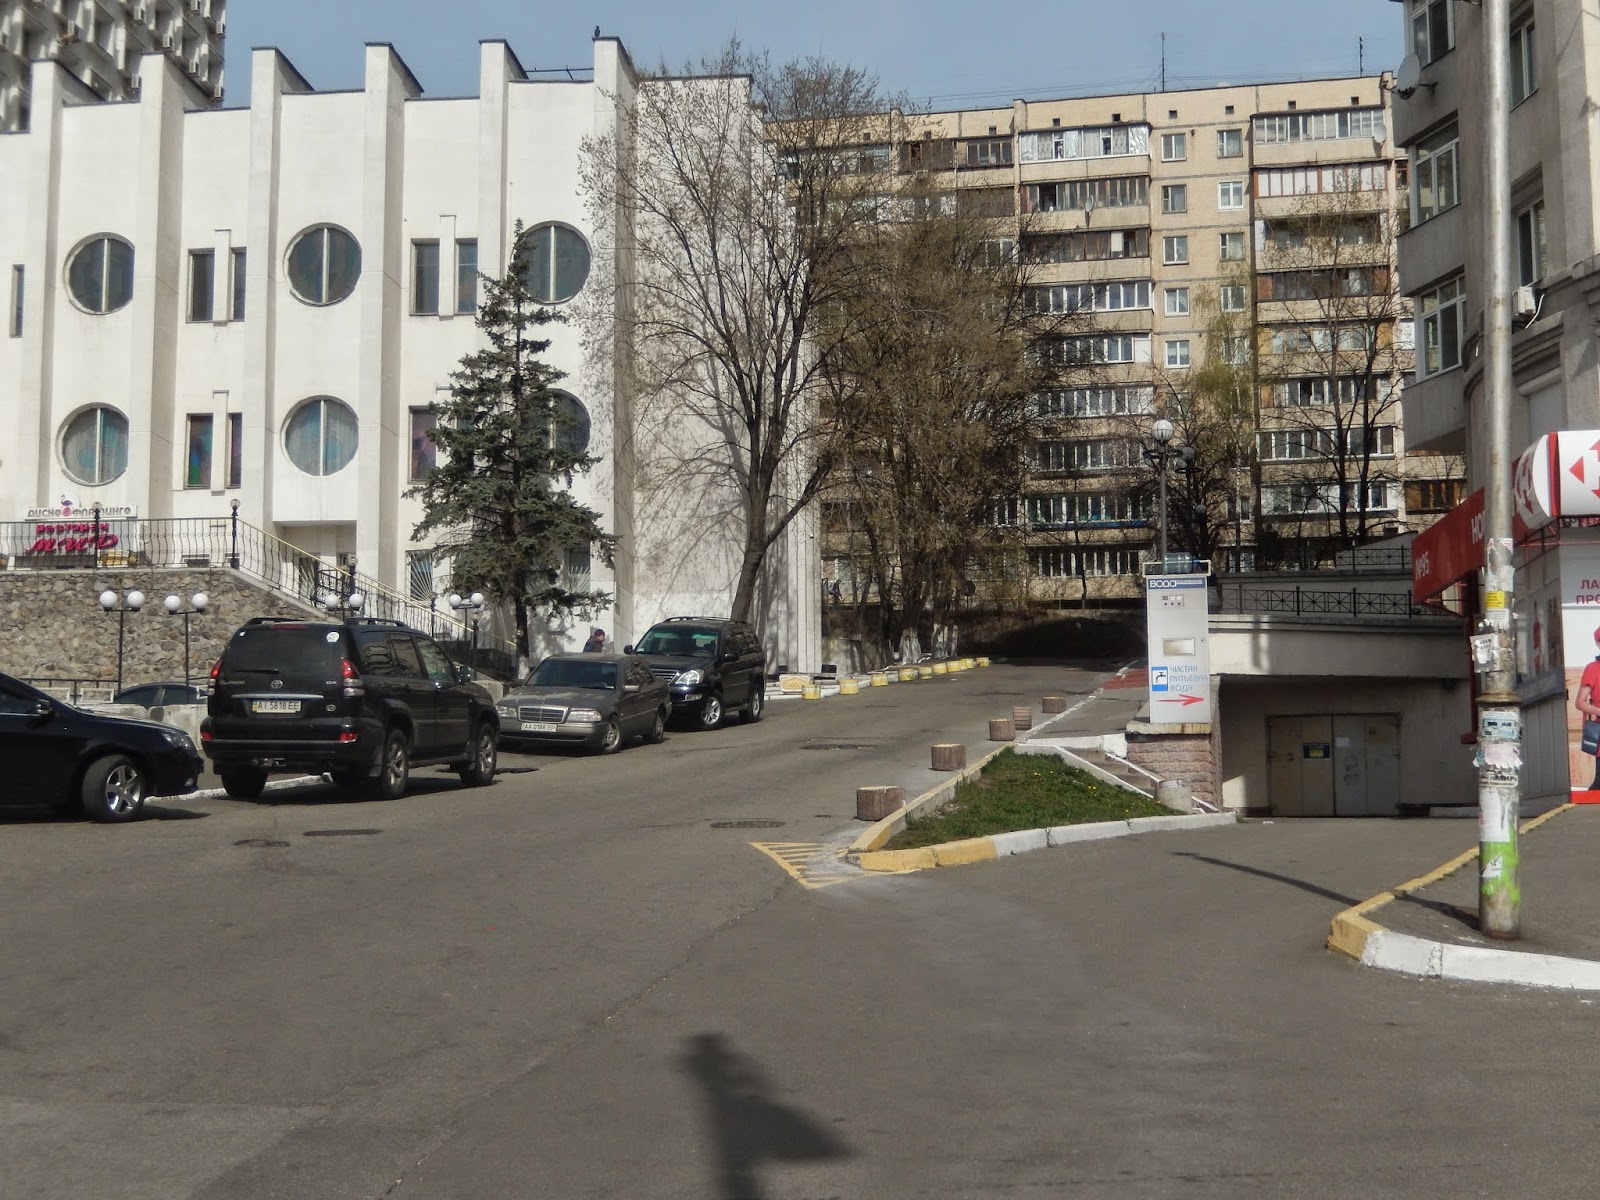 Современный вид бывшей улицы Нововладимирской и Алексея Шовкуненко.
Источник: http://bibldemeevskaja.blogspot.com/